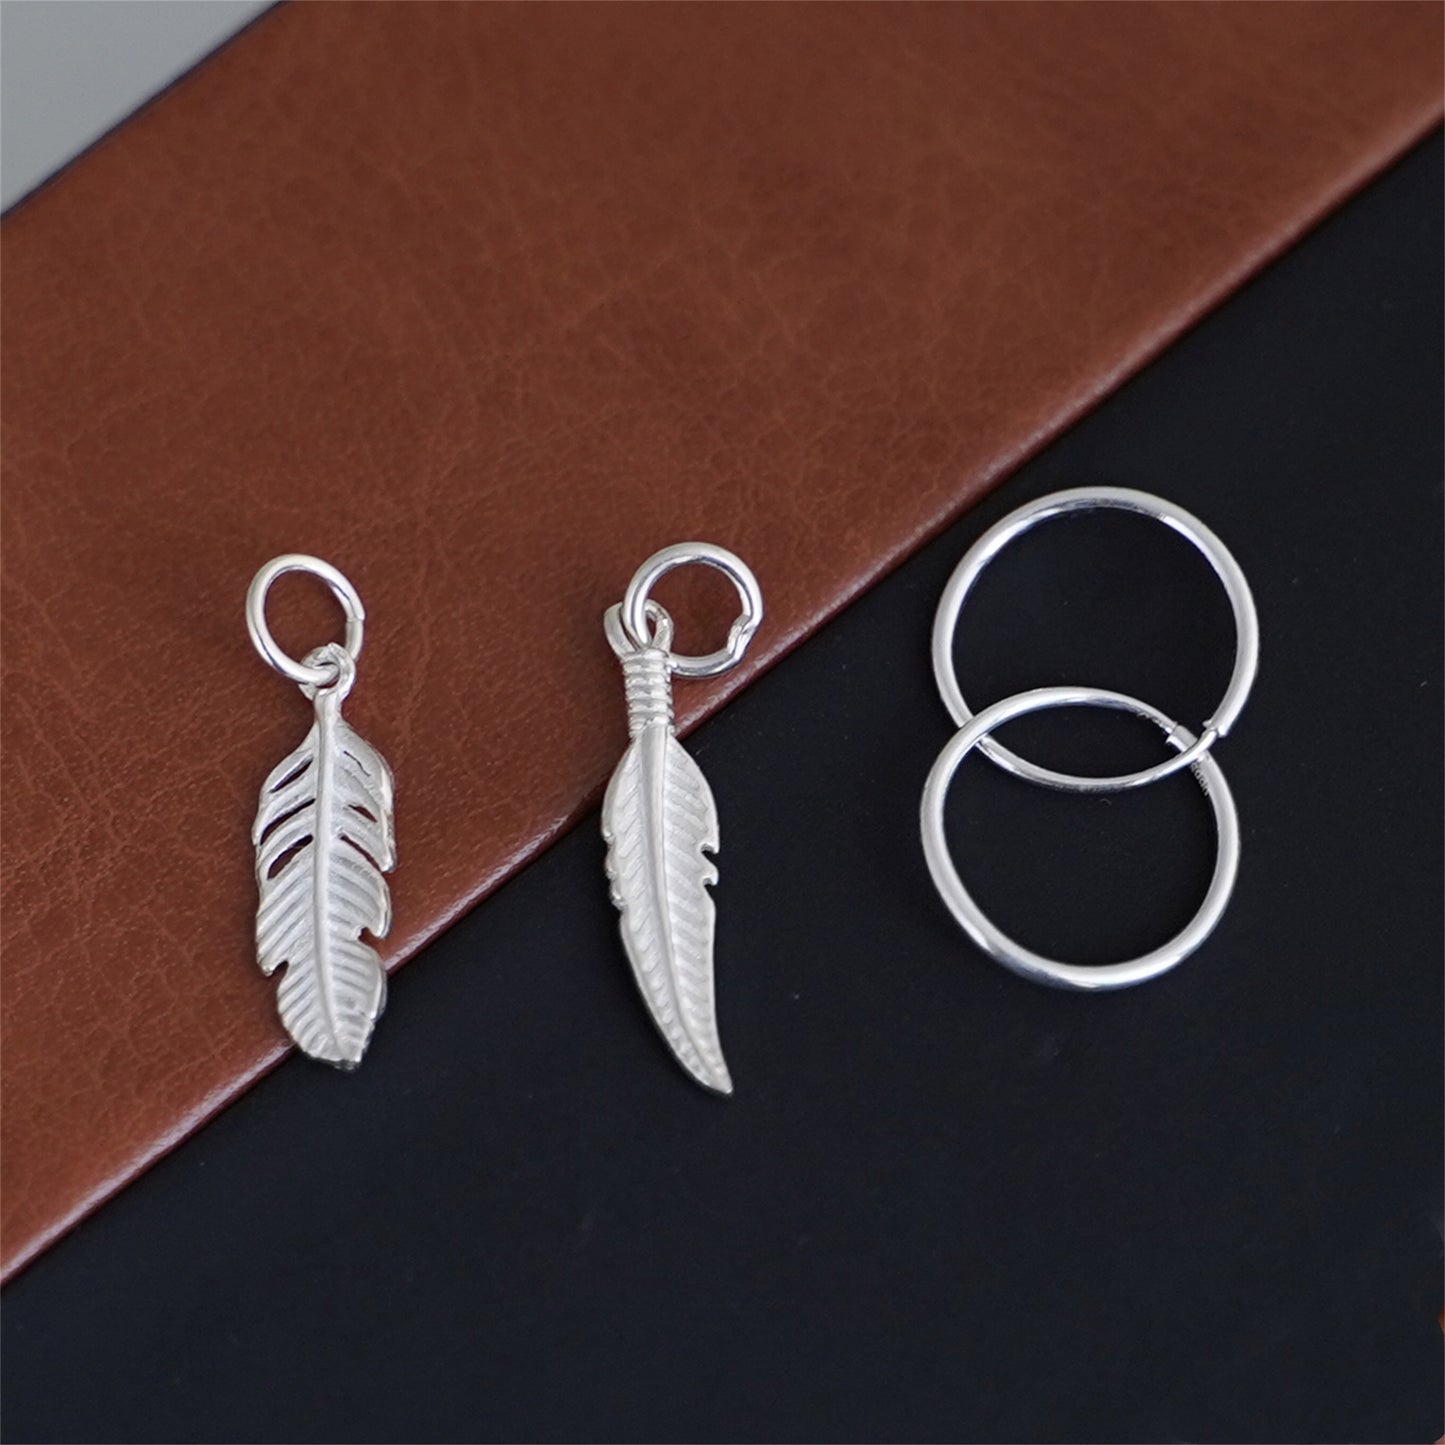 925 Sterling Silver Feather Angel Wing Charm Pendant for Necklace Bracelet Earrings - sugarkittenlondon